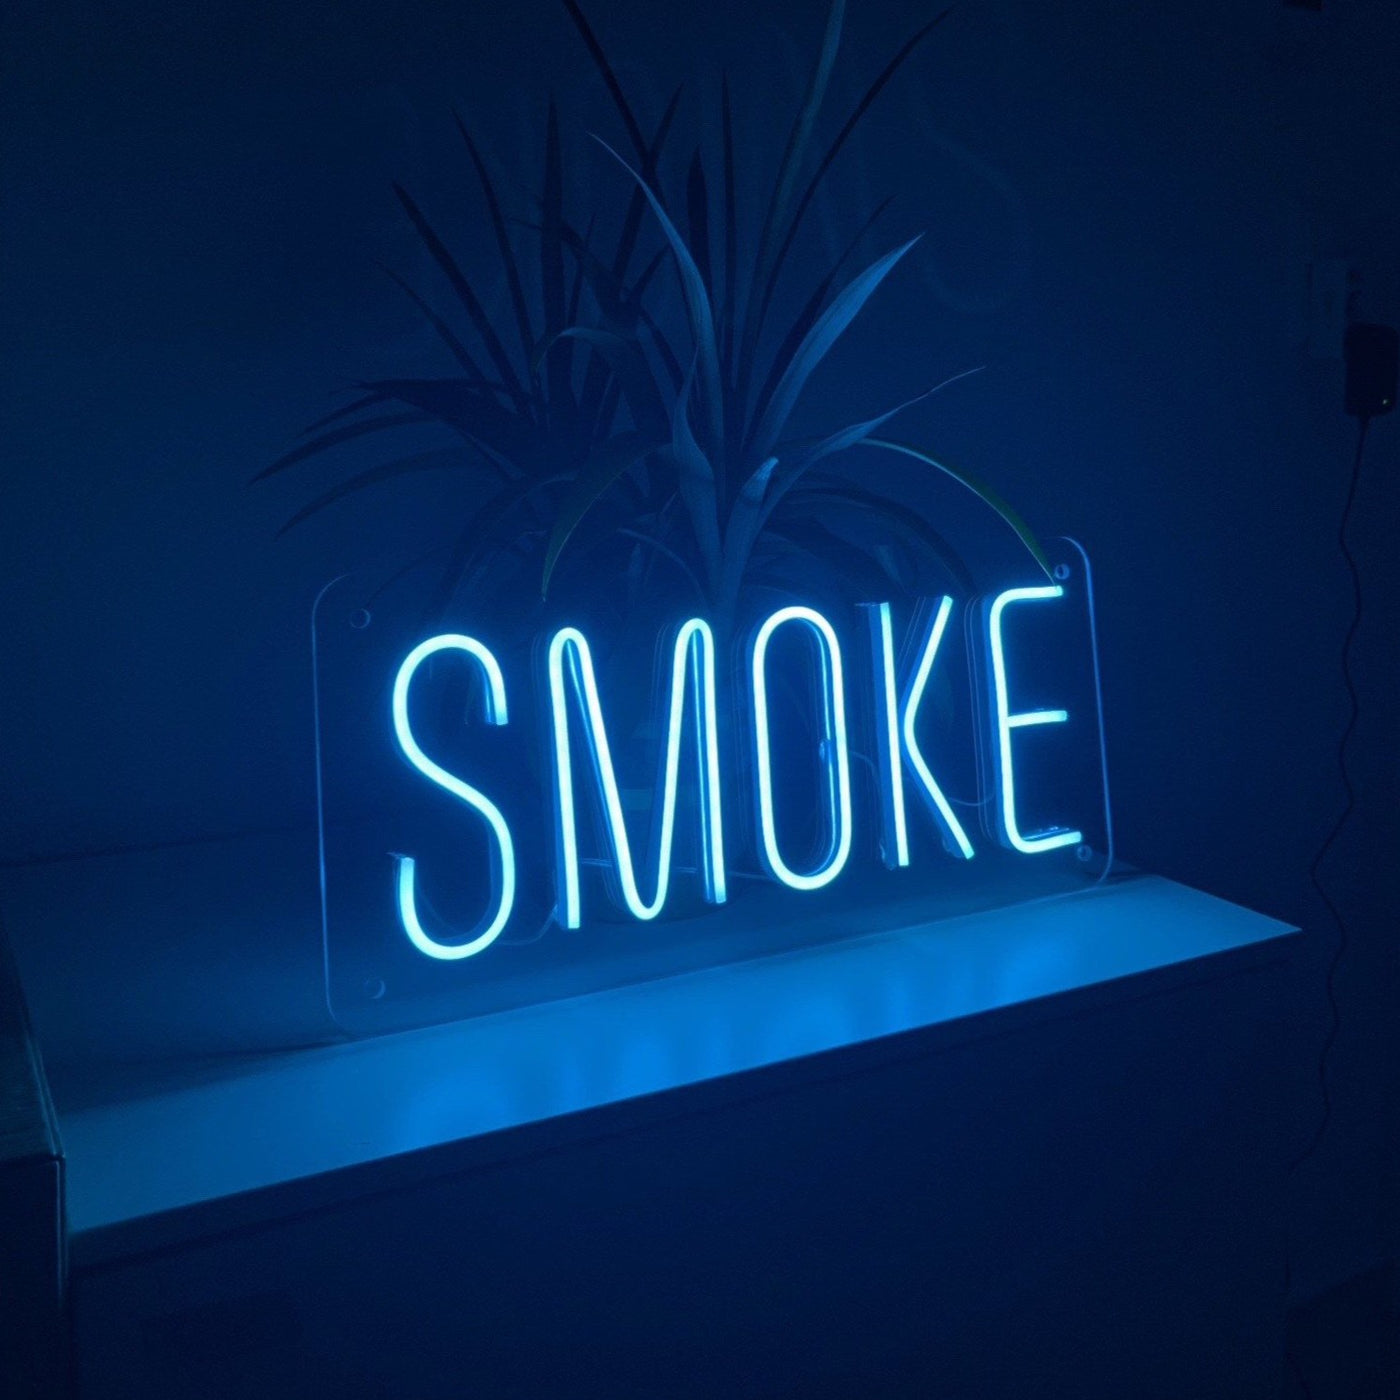 "SMOKE" Neonschild / Box